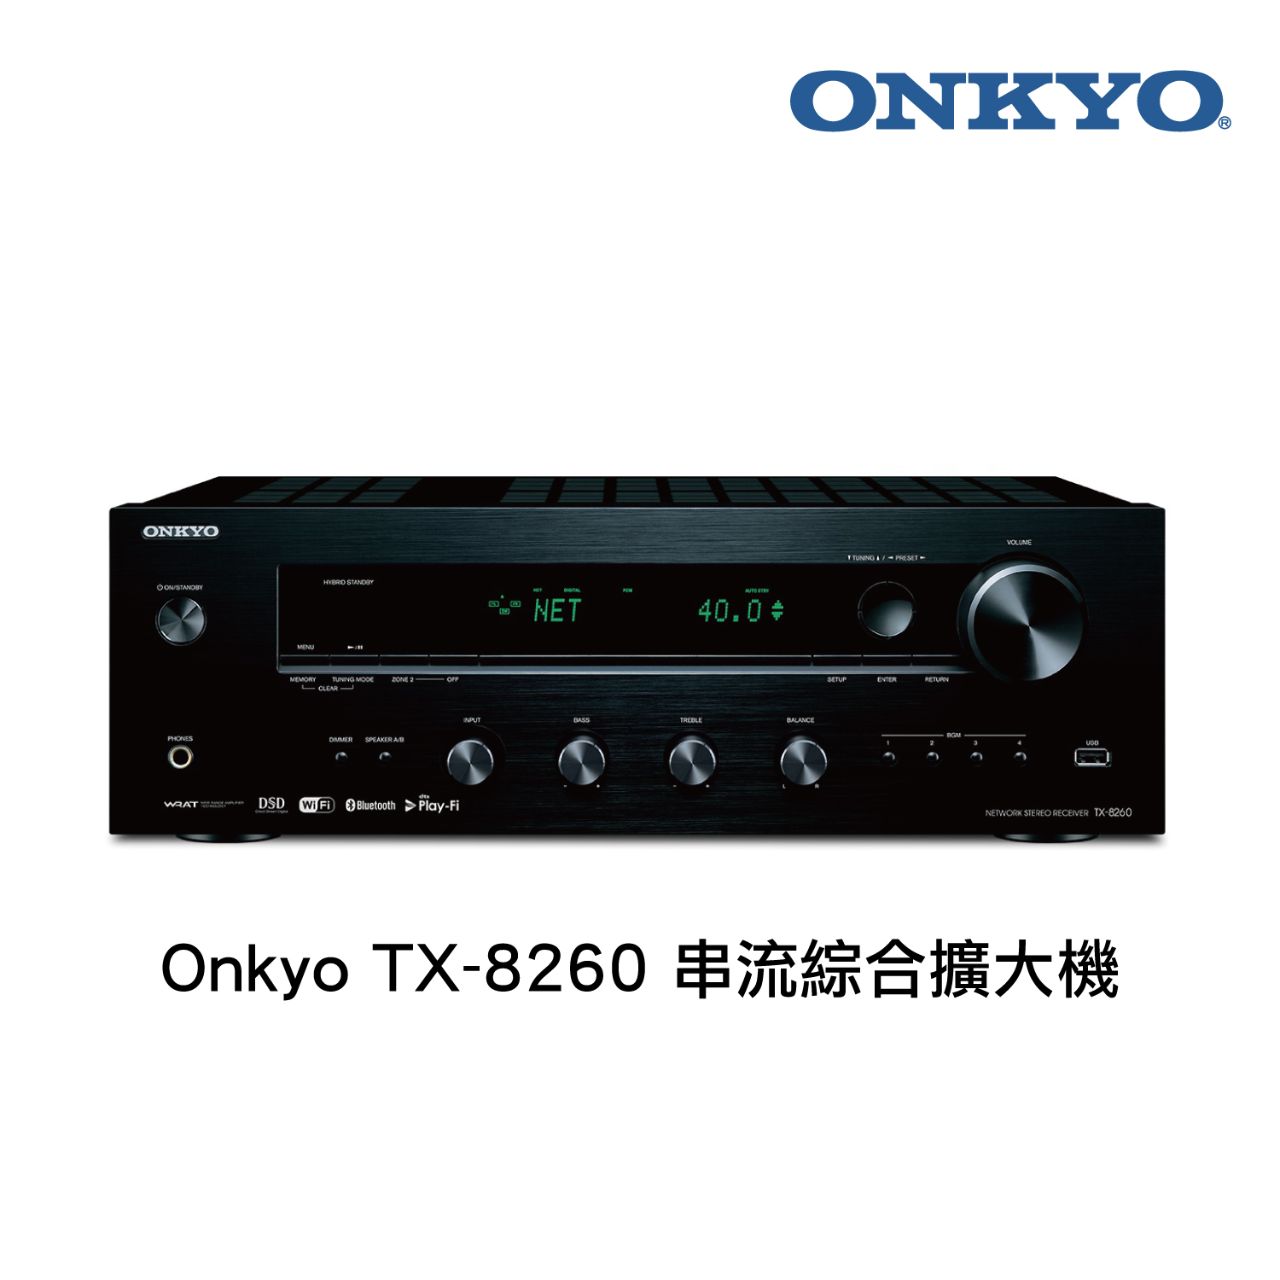 Onkyo TX-8260